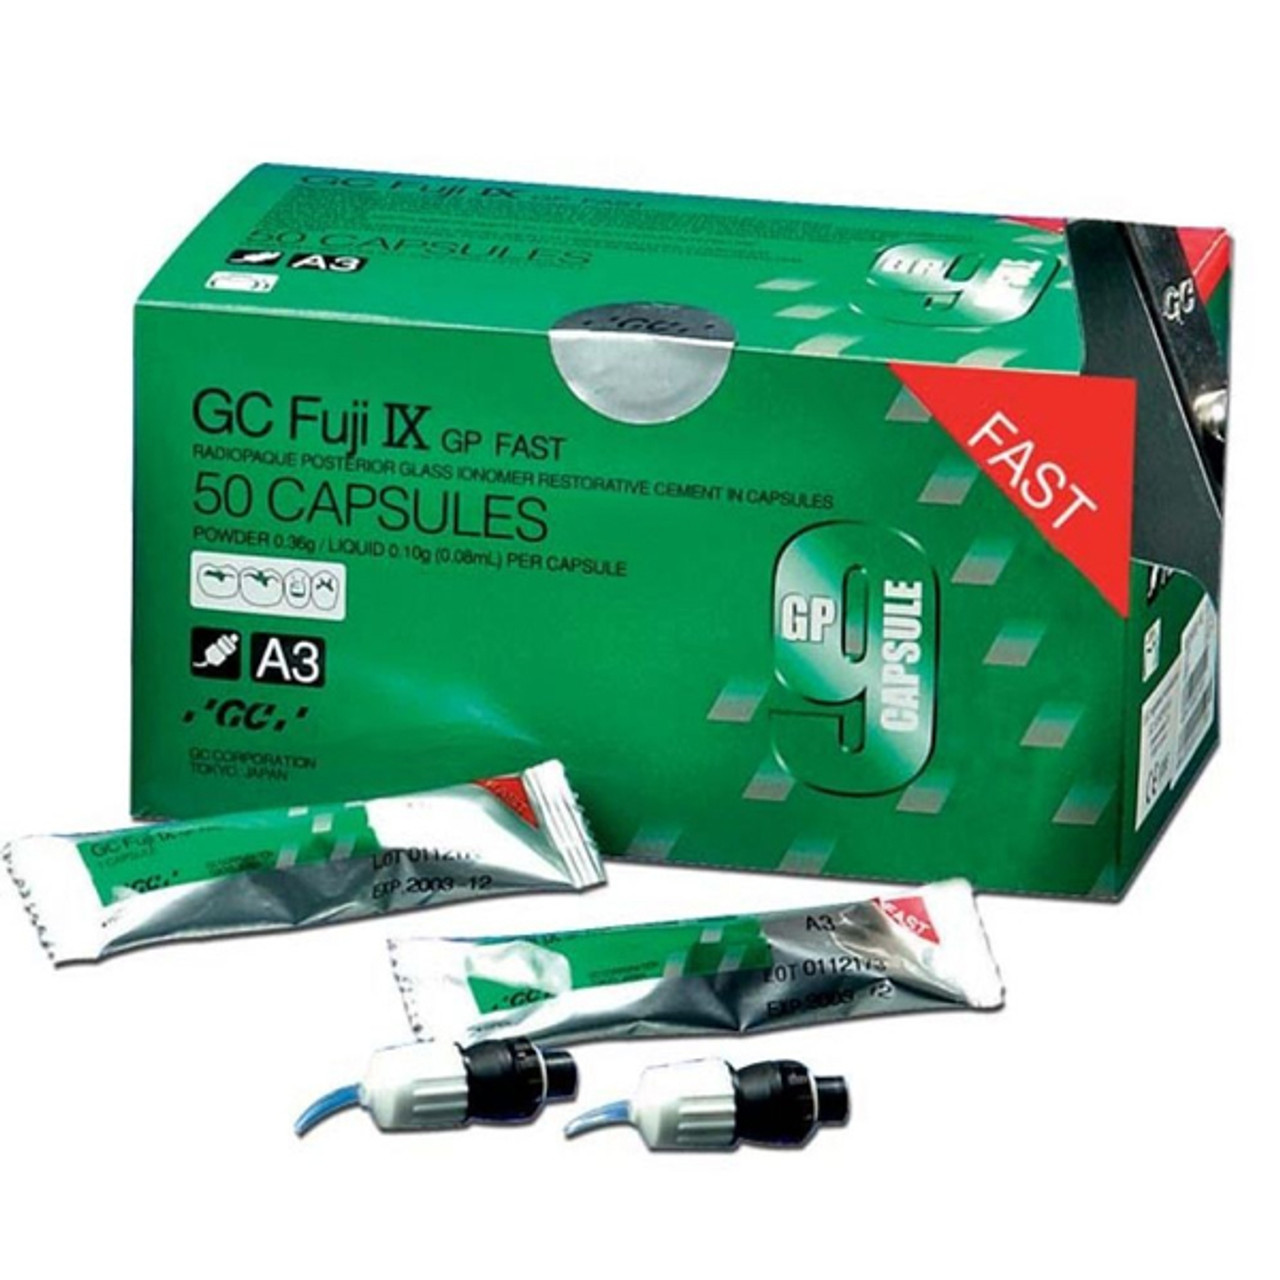 Fuji IX GP Extra Caps A3.5 48/Bx